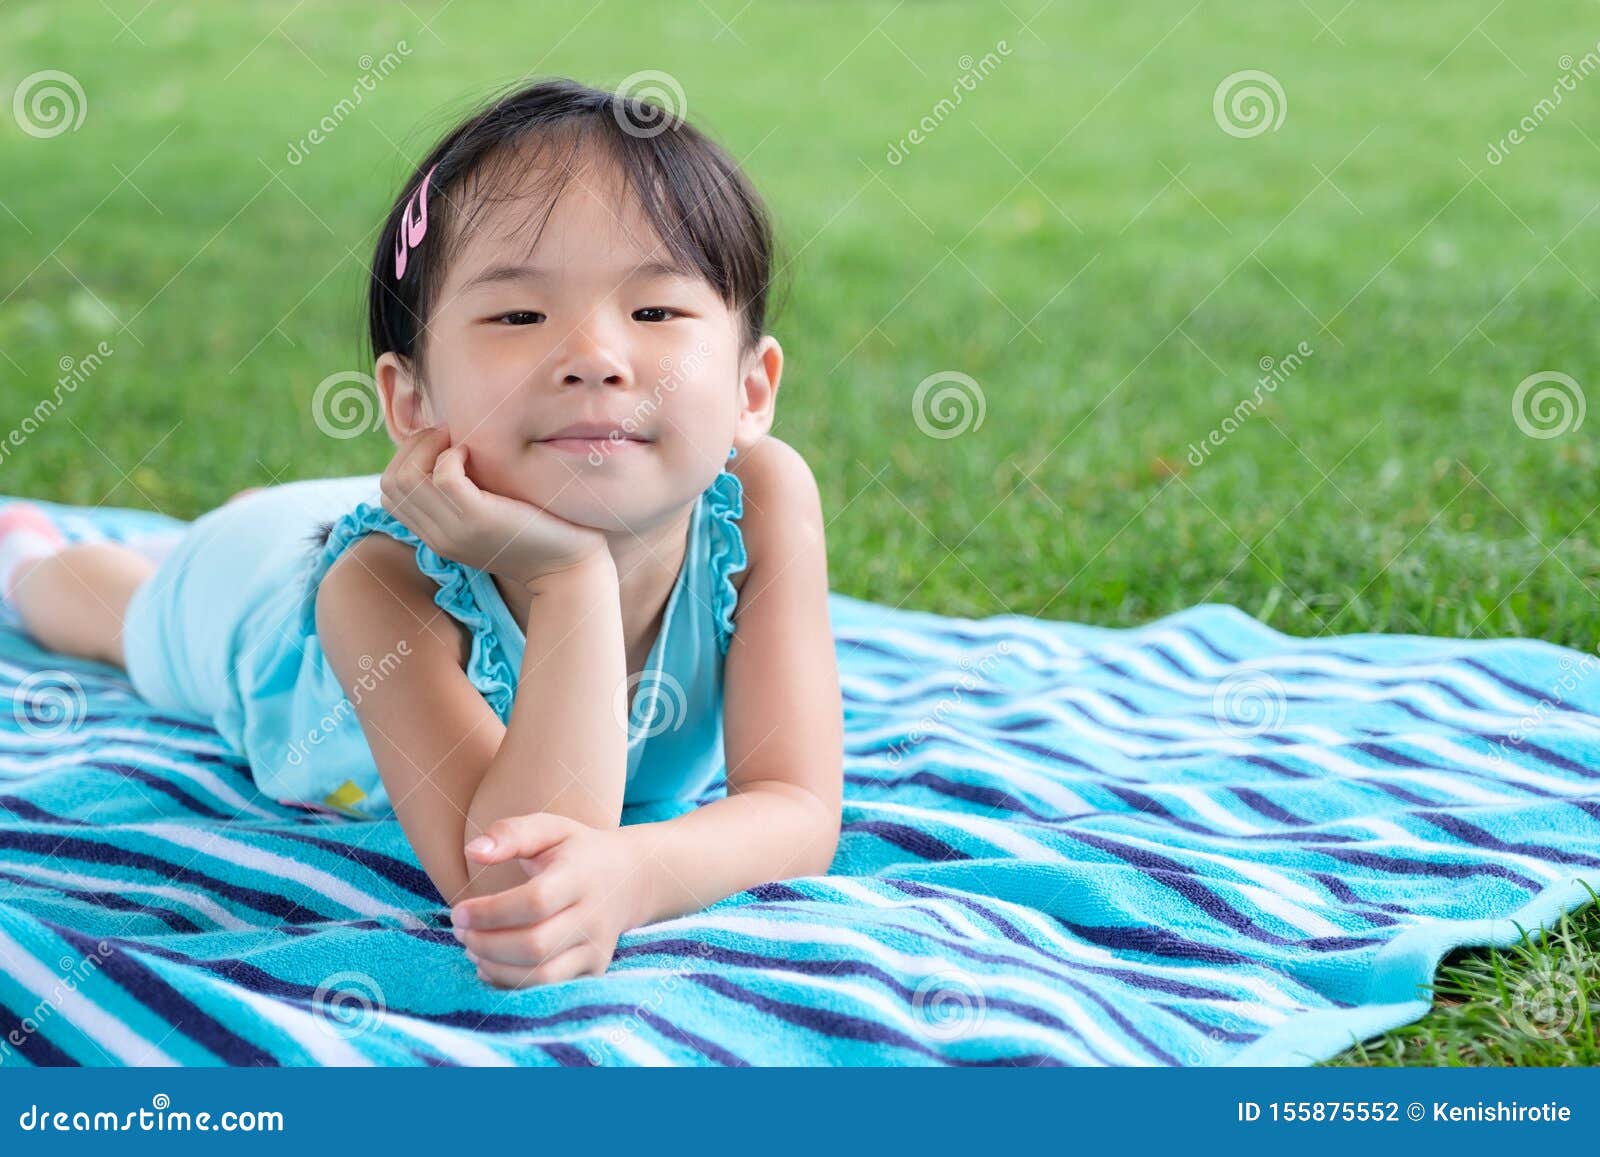 夏日在草地上铺毛巾的幼女库存照片 图片包括有夏日在草地上铺毛巾的幼女